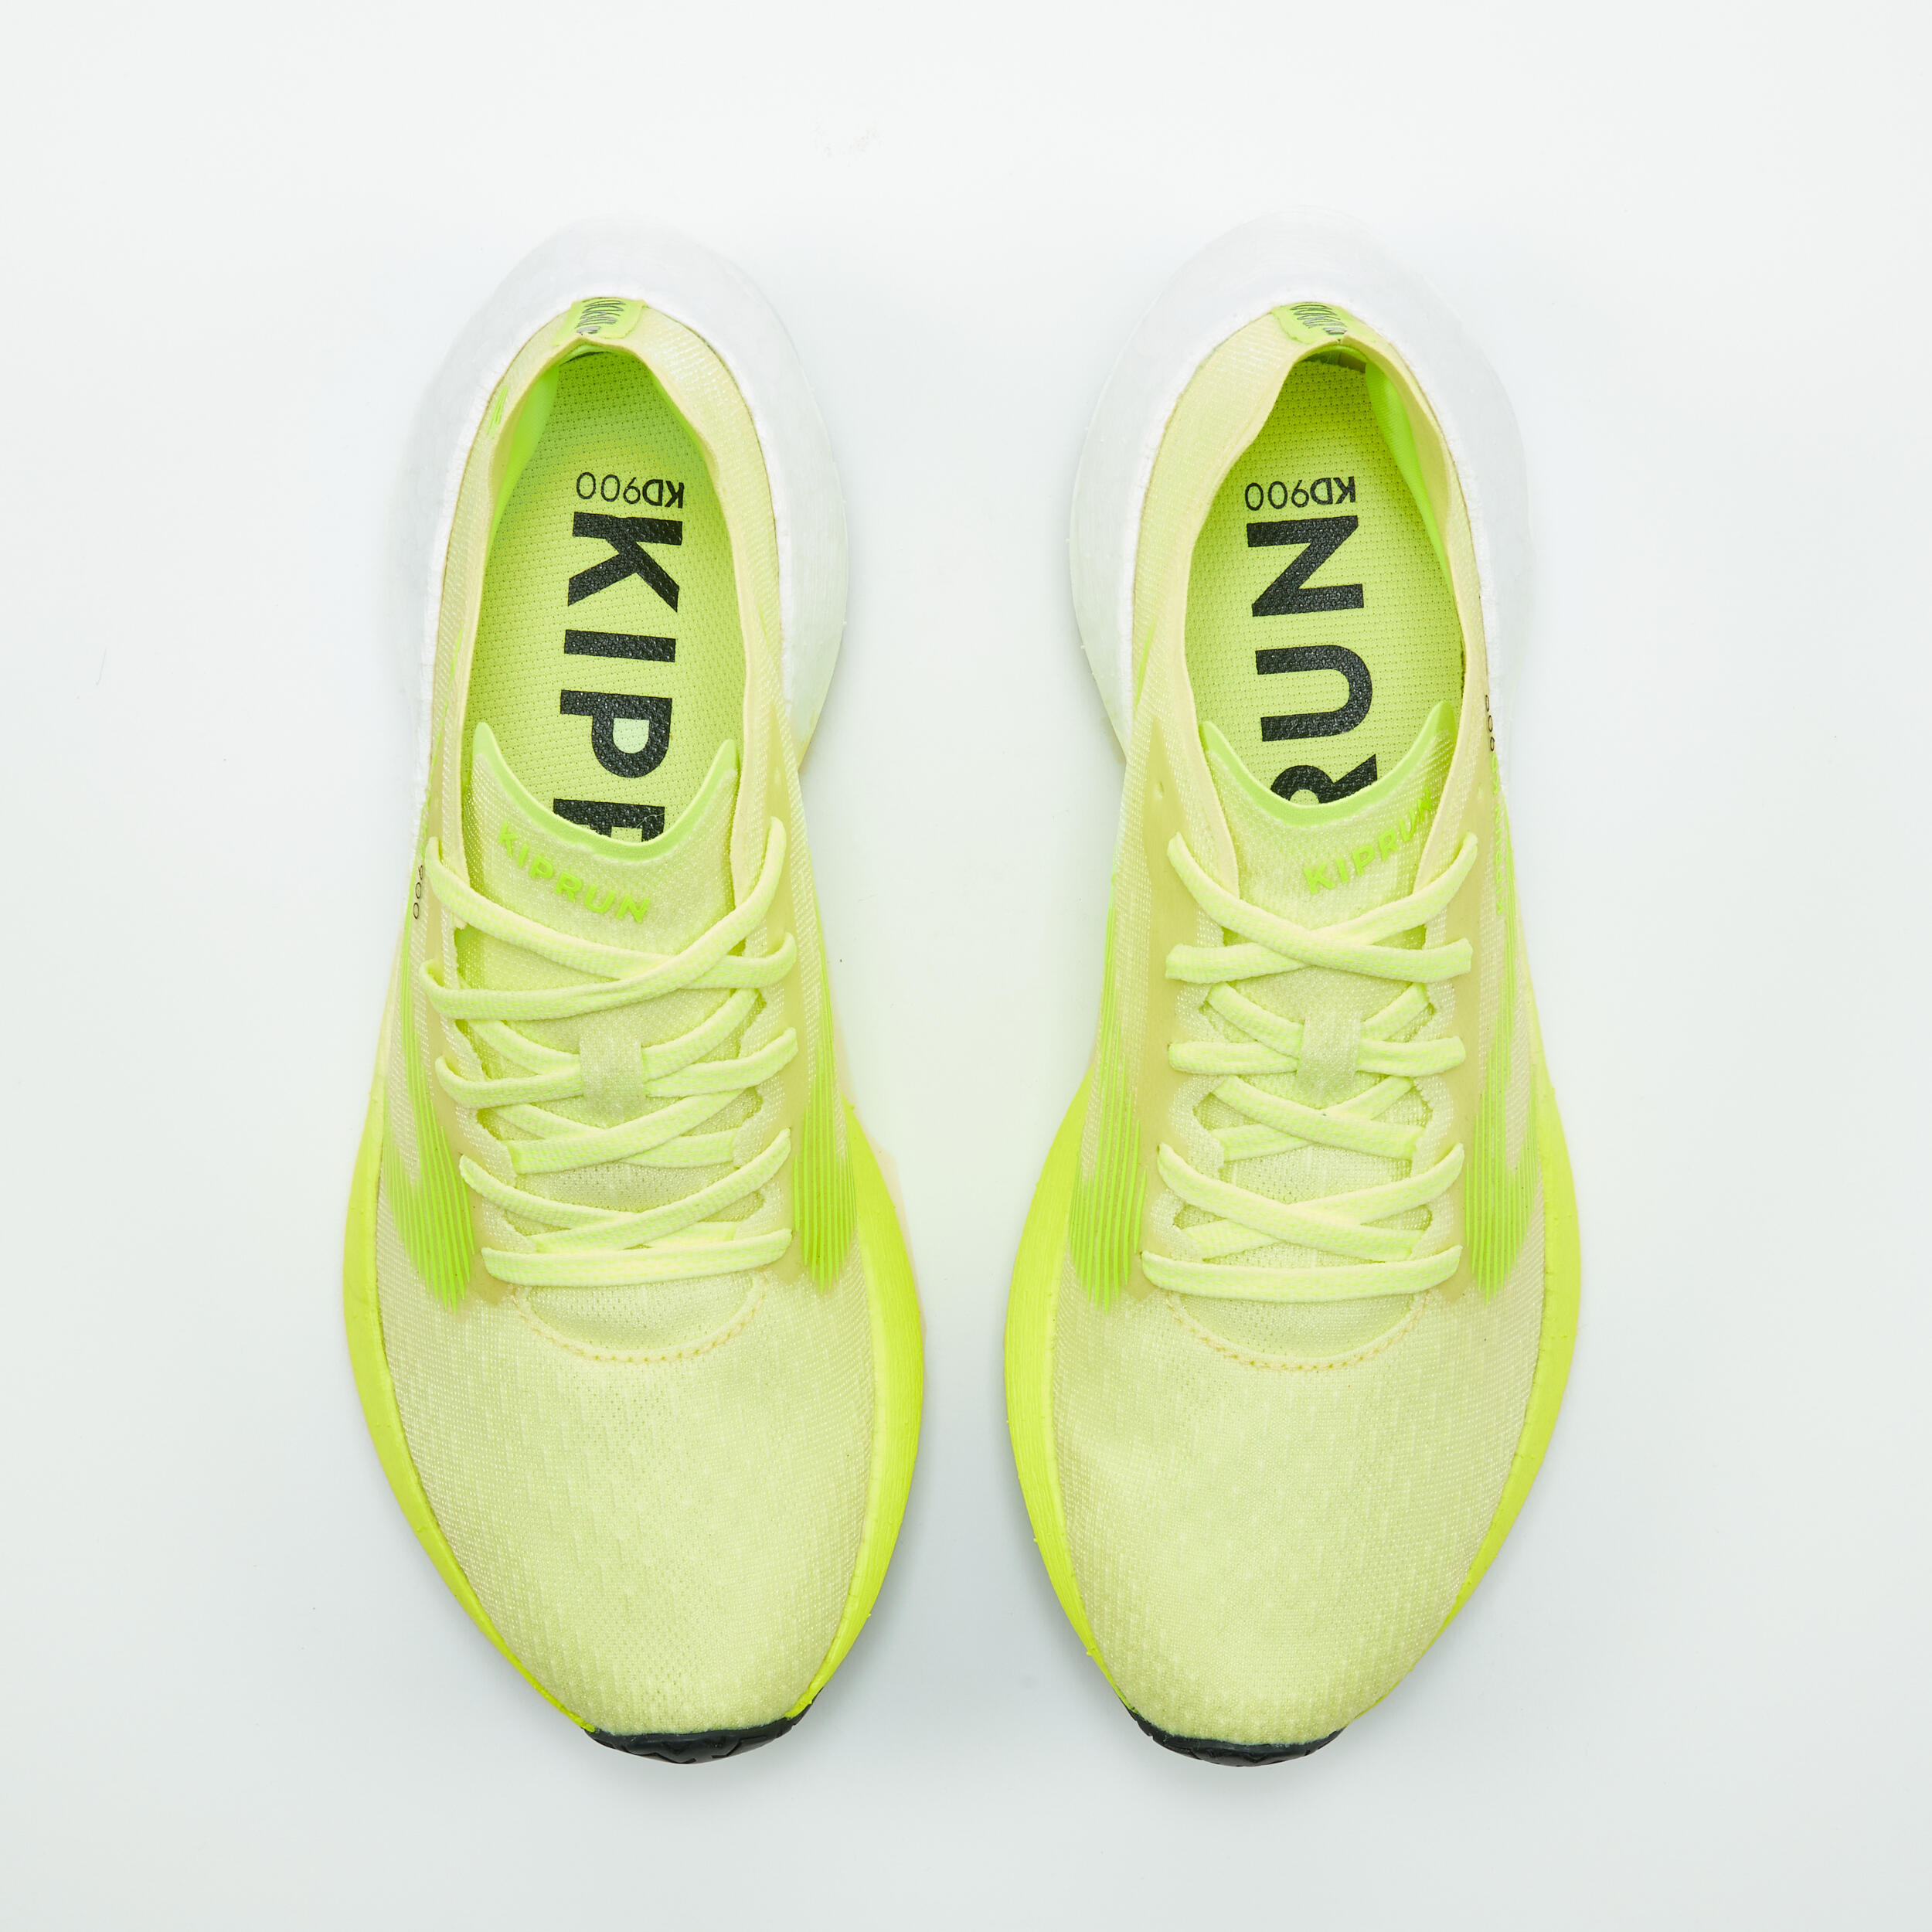 KD900 Women's Running Shoes -Yellow 7/8